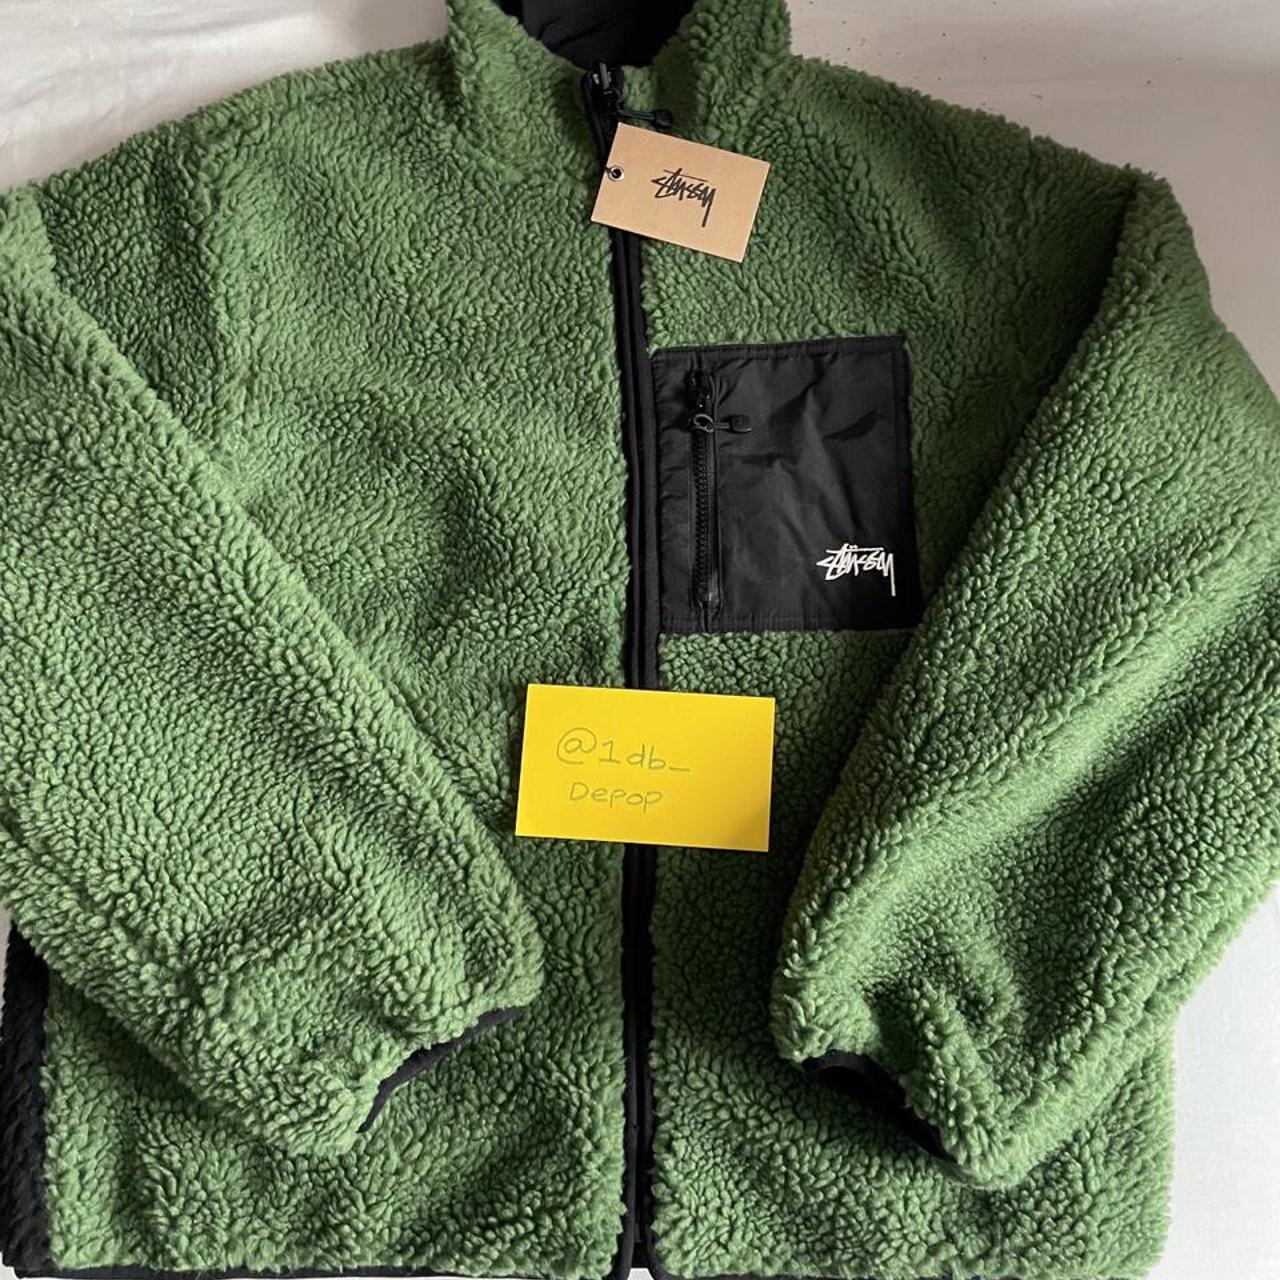 Stüssy Men's Green and Khaki Jacket | Depop